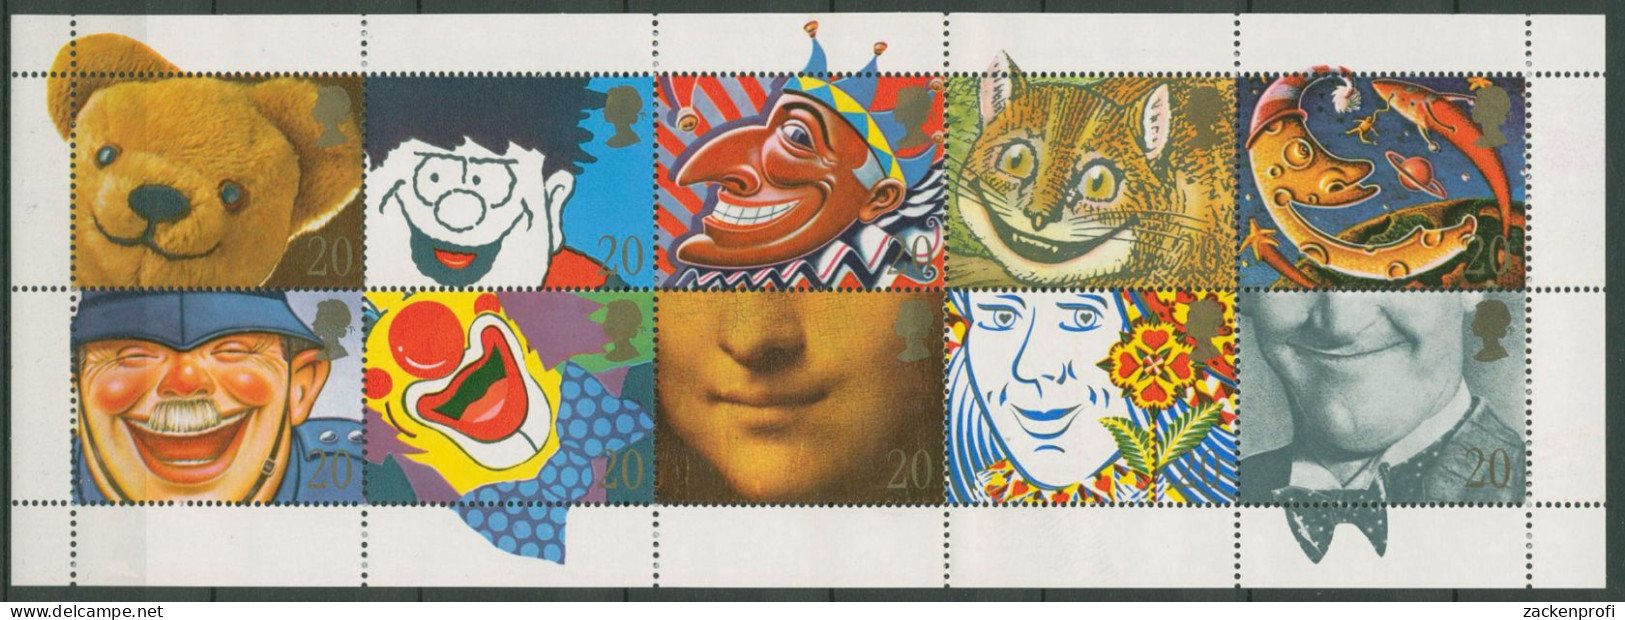 Großbritannien 1991 Teddy Clown 1327/36 I A K Postfrisch, Gefaltet (SG28111) - Hojas Bloque